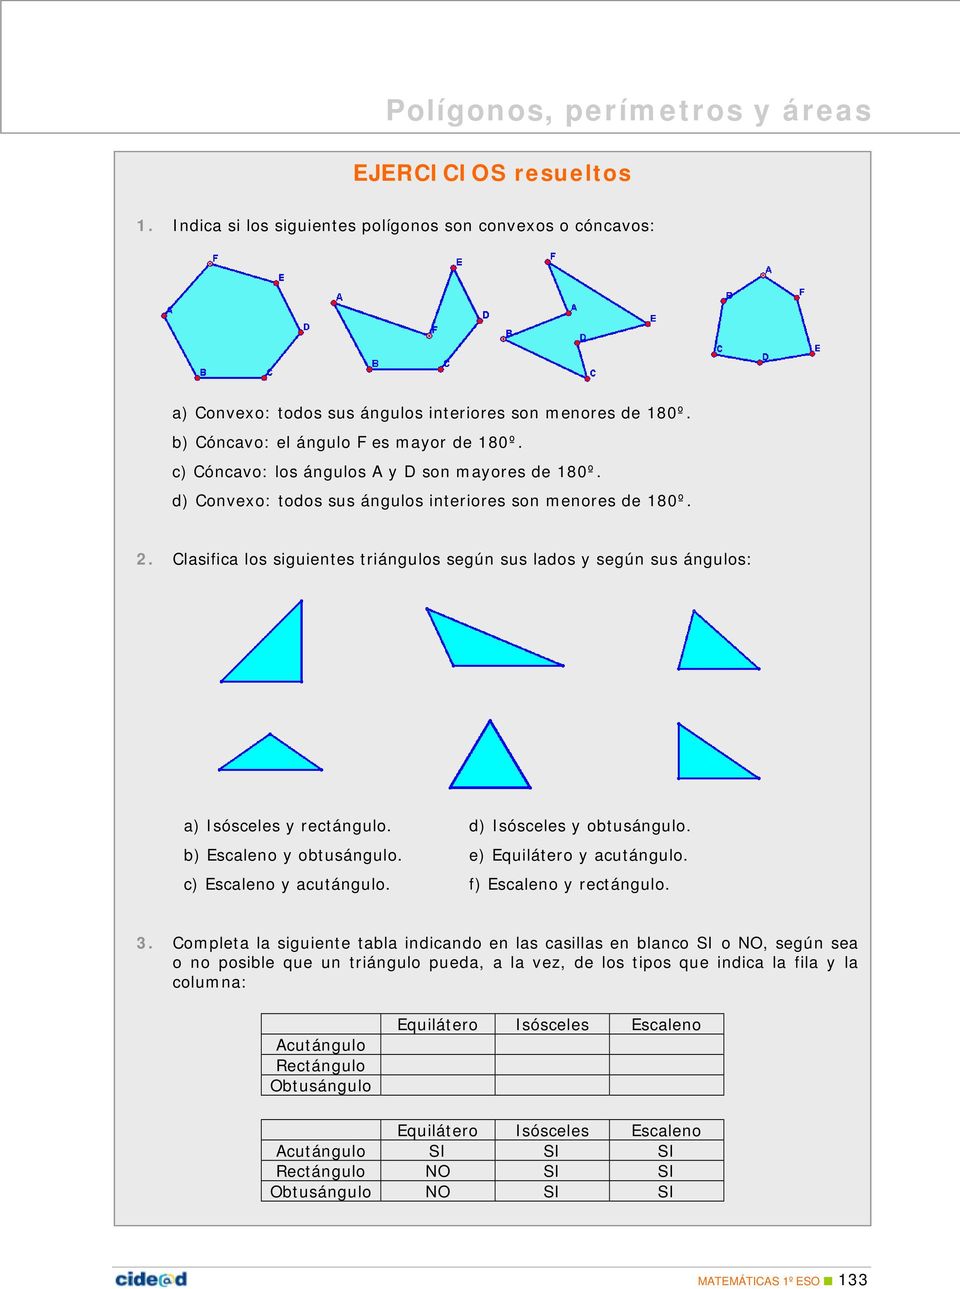 . Clasifica los siguientes triángulos según sus lados y según sus ángulos: a) Isósceles y rectángulo. d) Isósceles y obtusángulo. b) Escaleno y obtusángulo. e) Equilátero y acutángulo.